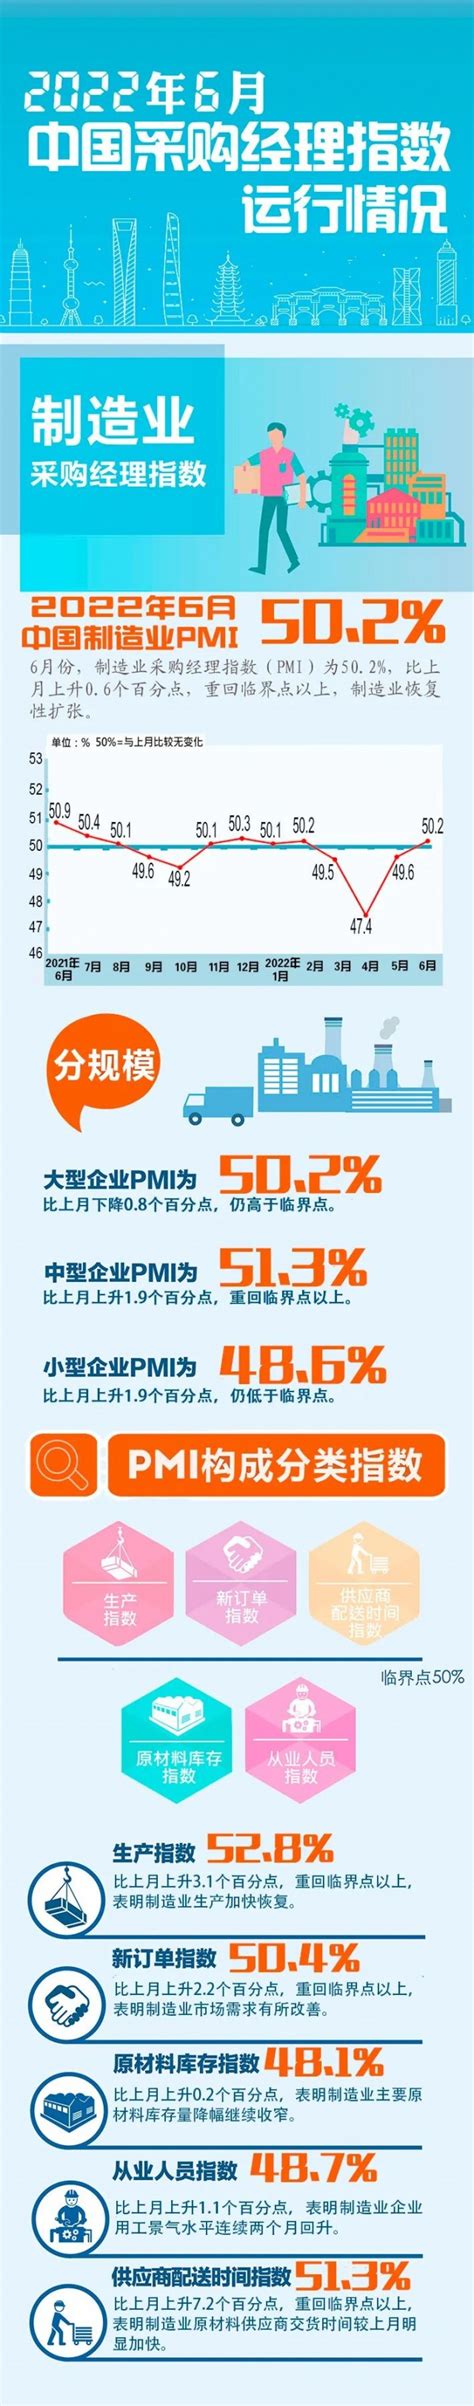 黑龙江联通携手华为部署新型分布式微站5G DRS，打造居民区“网络好一点”新品牌 - 黑龙江 — C114通信网